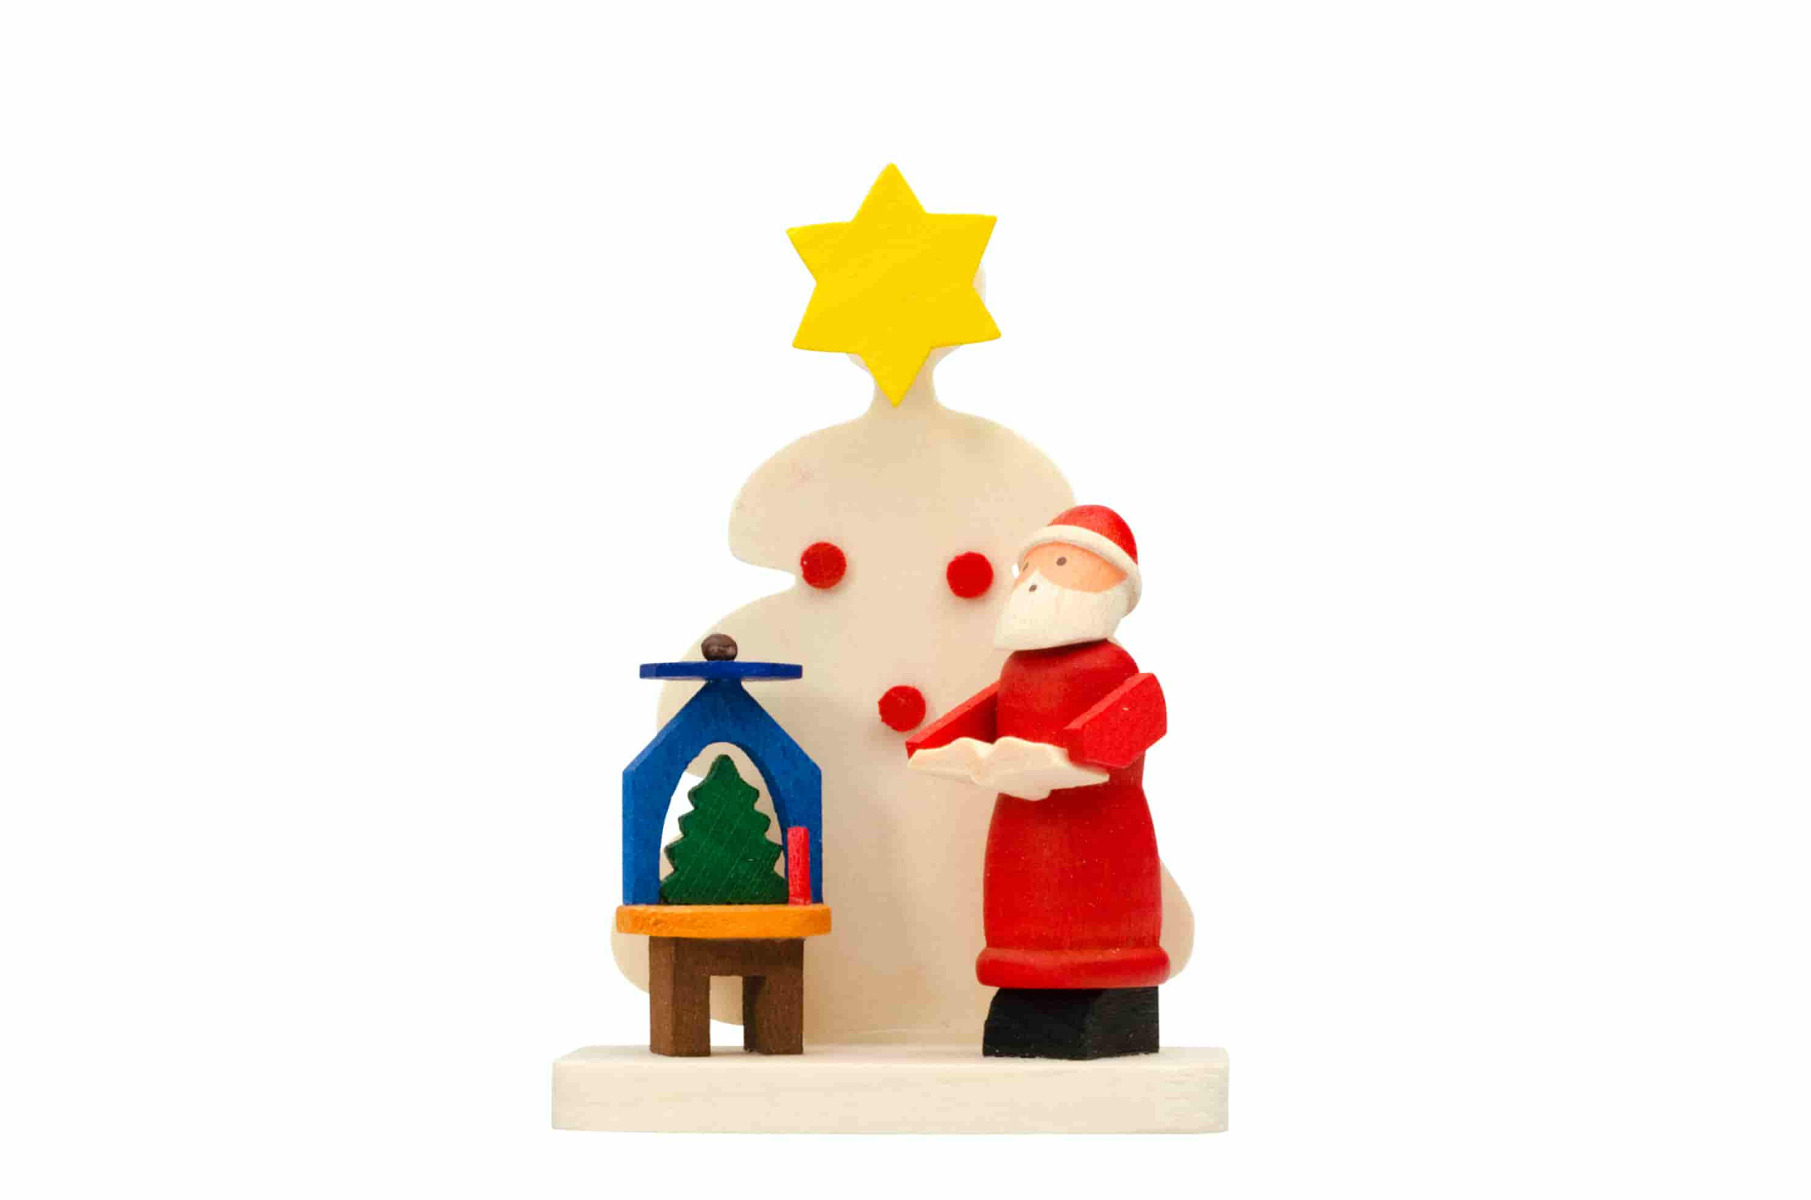 Baum-Weihnachtsmann mit Pyramide als Baumschmuck